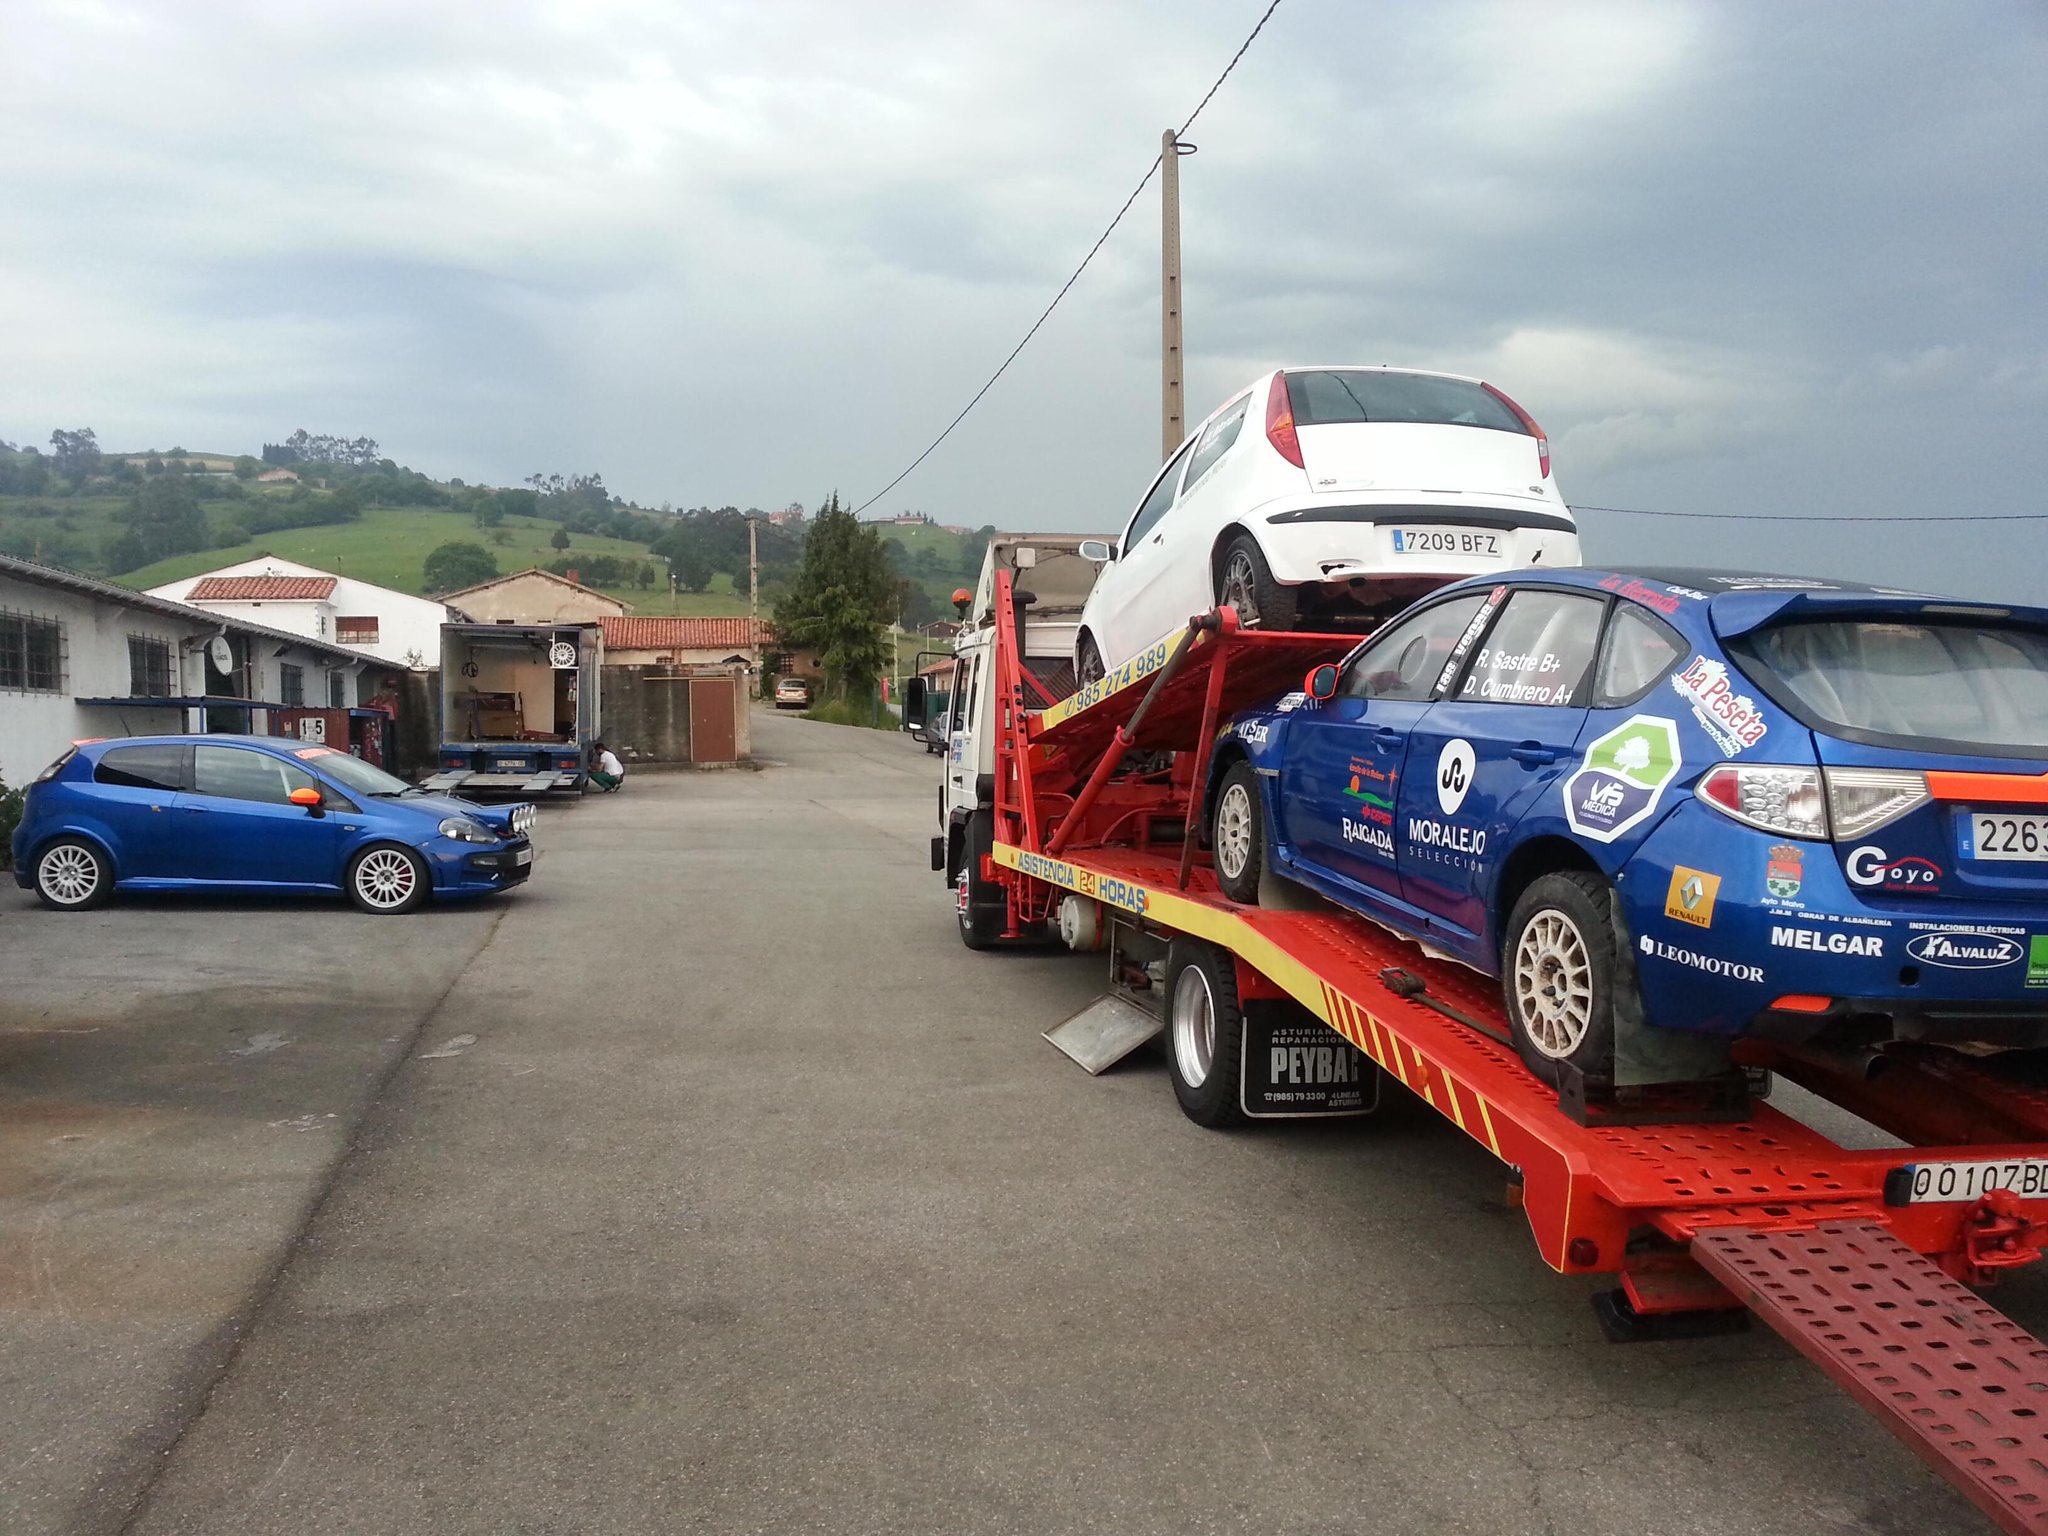 II Rallye Tierras Altas de Lorca [7, 8 y 9 de Junio] BMBxY28CYAAA76q